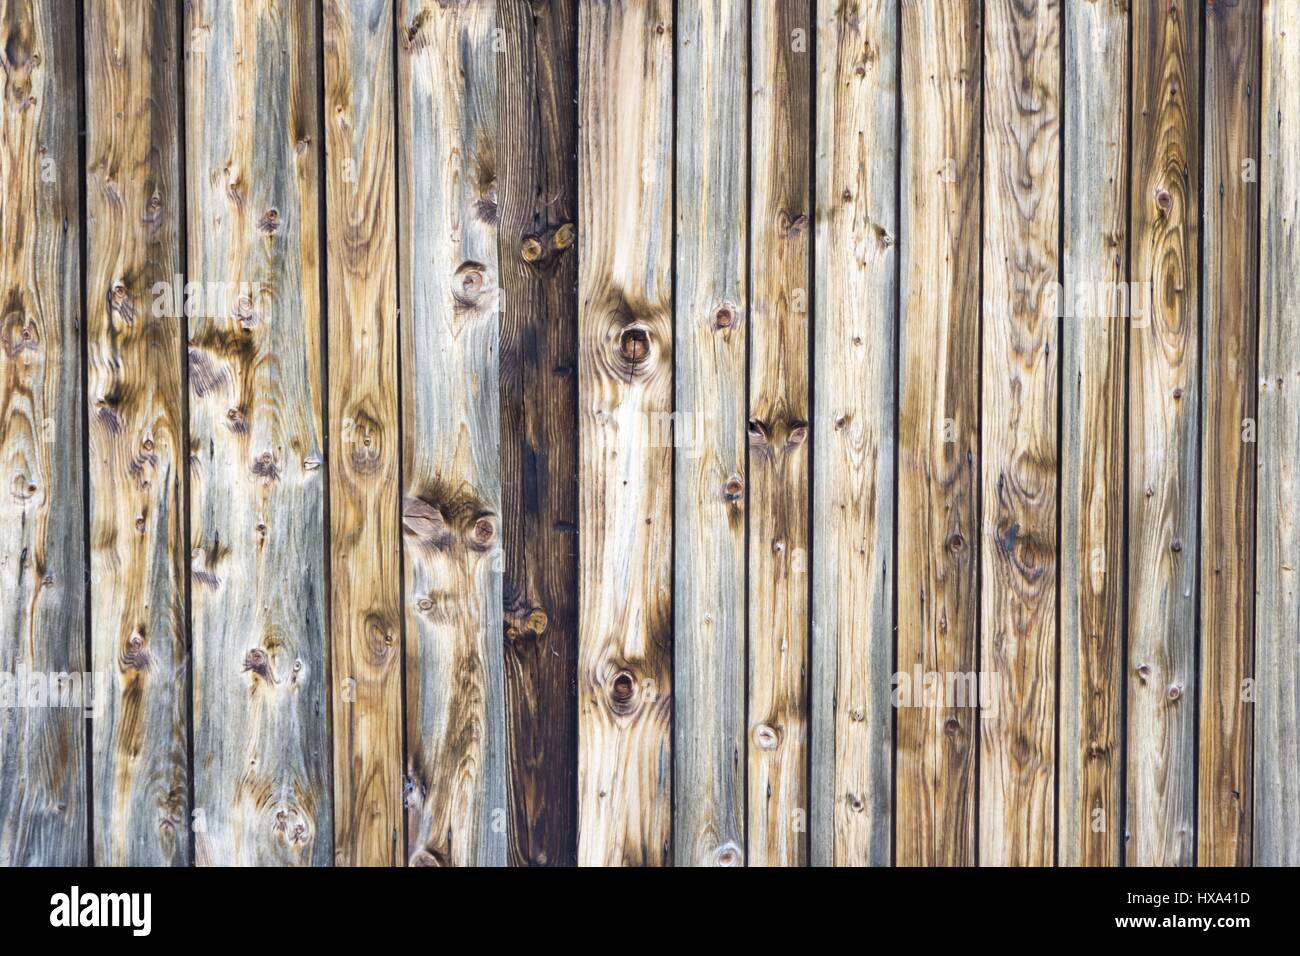 Fondo in tessuto di legno in listelli verticali marroni e bushole. Il motivo è costituito da legno invecchiato in base al tempo. La costruzione fatta a mano colori caldi. Foto Stock